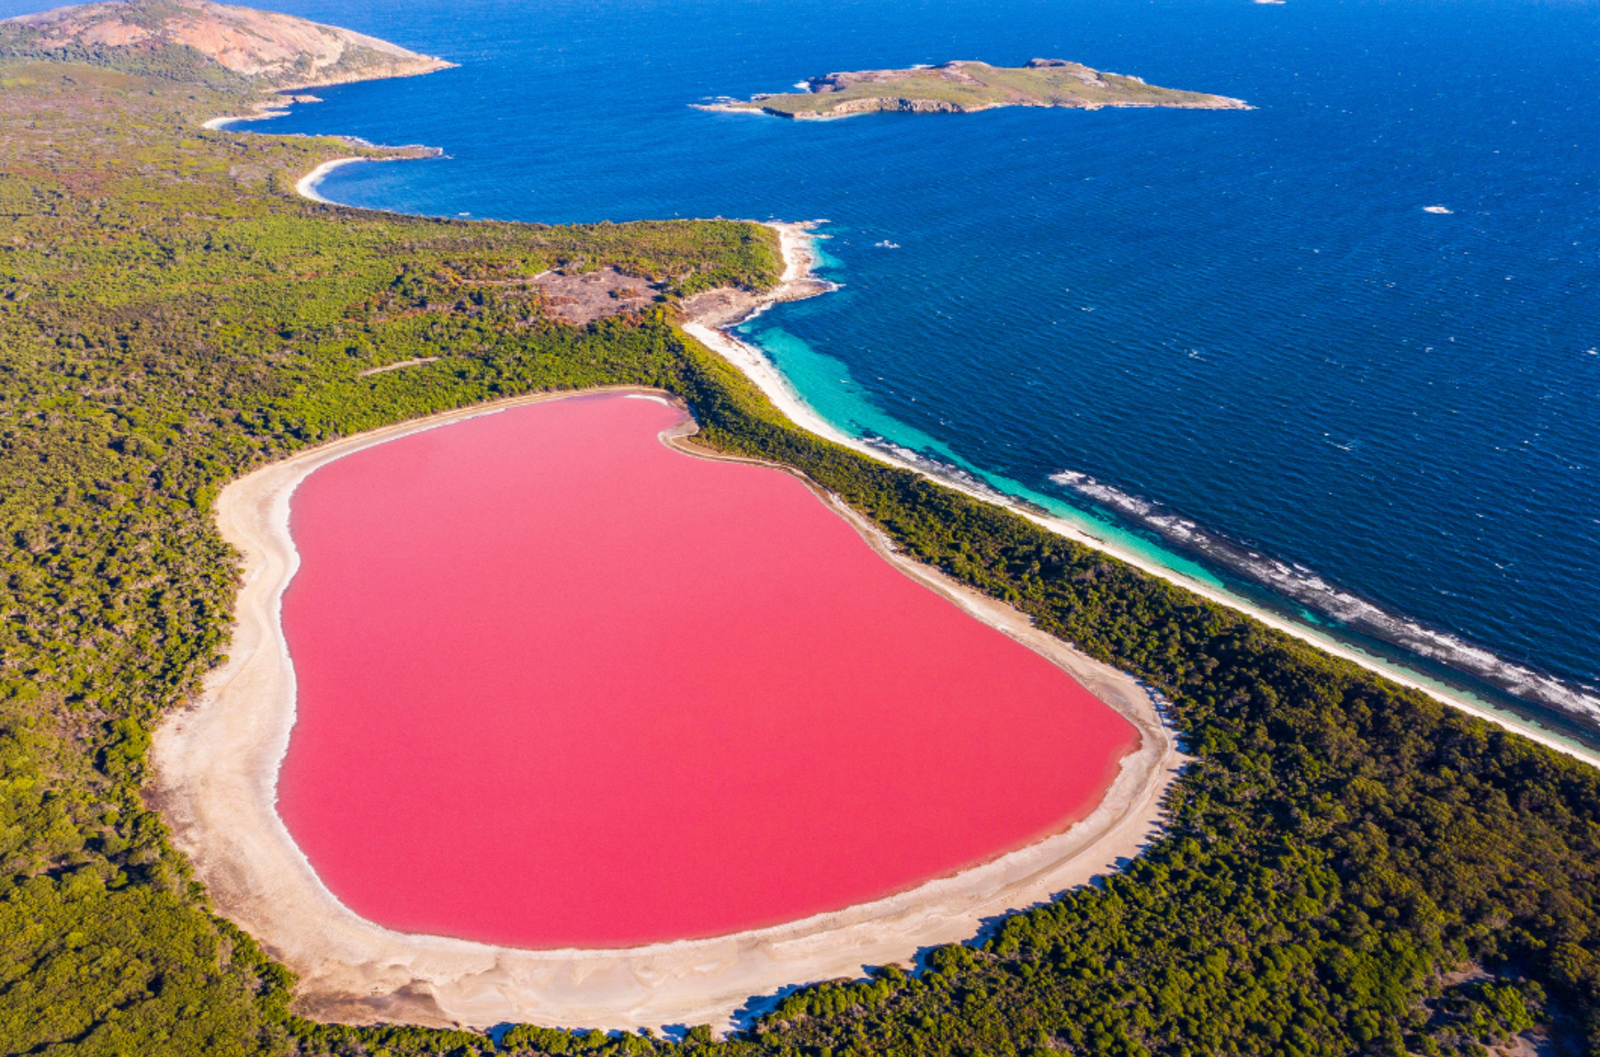 Lake Hillier, a pink lake alongside the blue ocean in Western Australia.